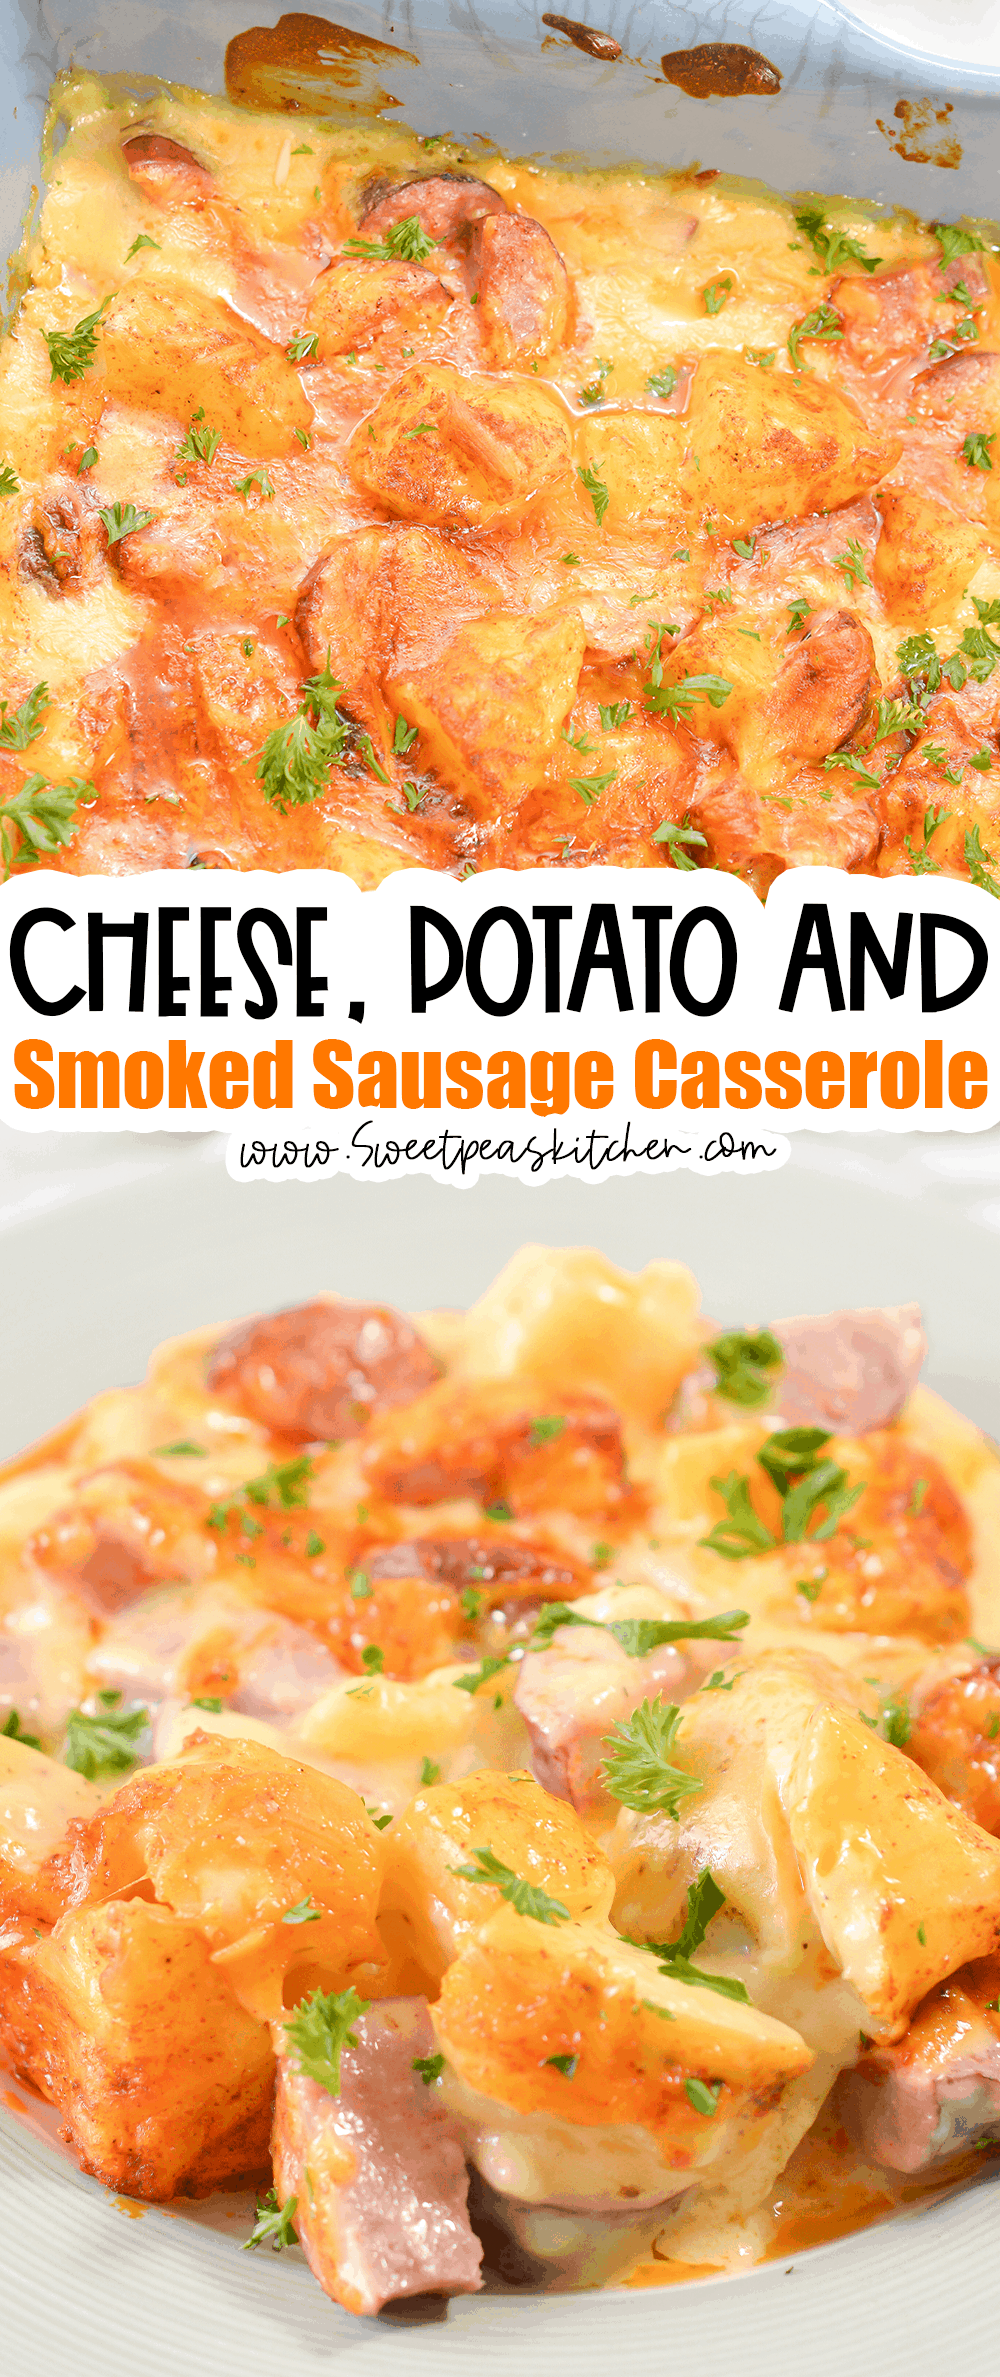 Cheese, Potato and Smoked Sausage Casserole on pinterest